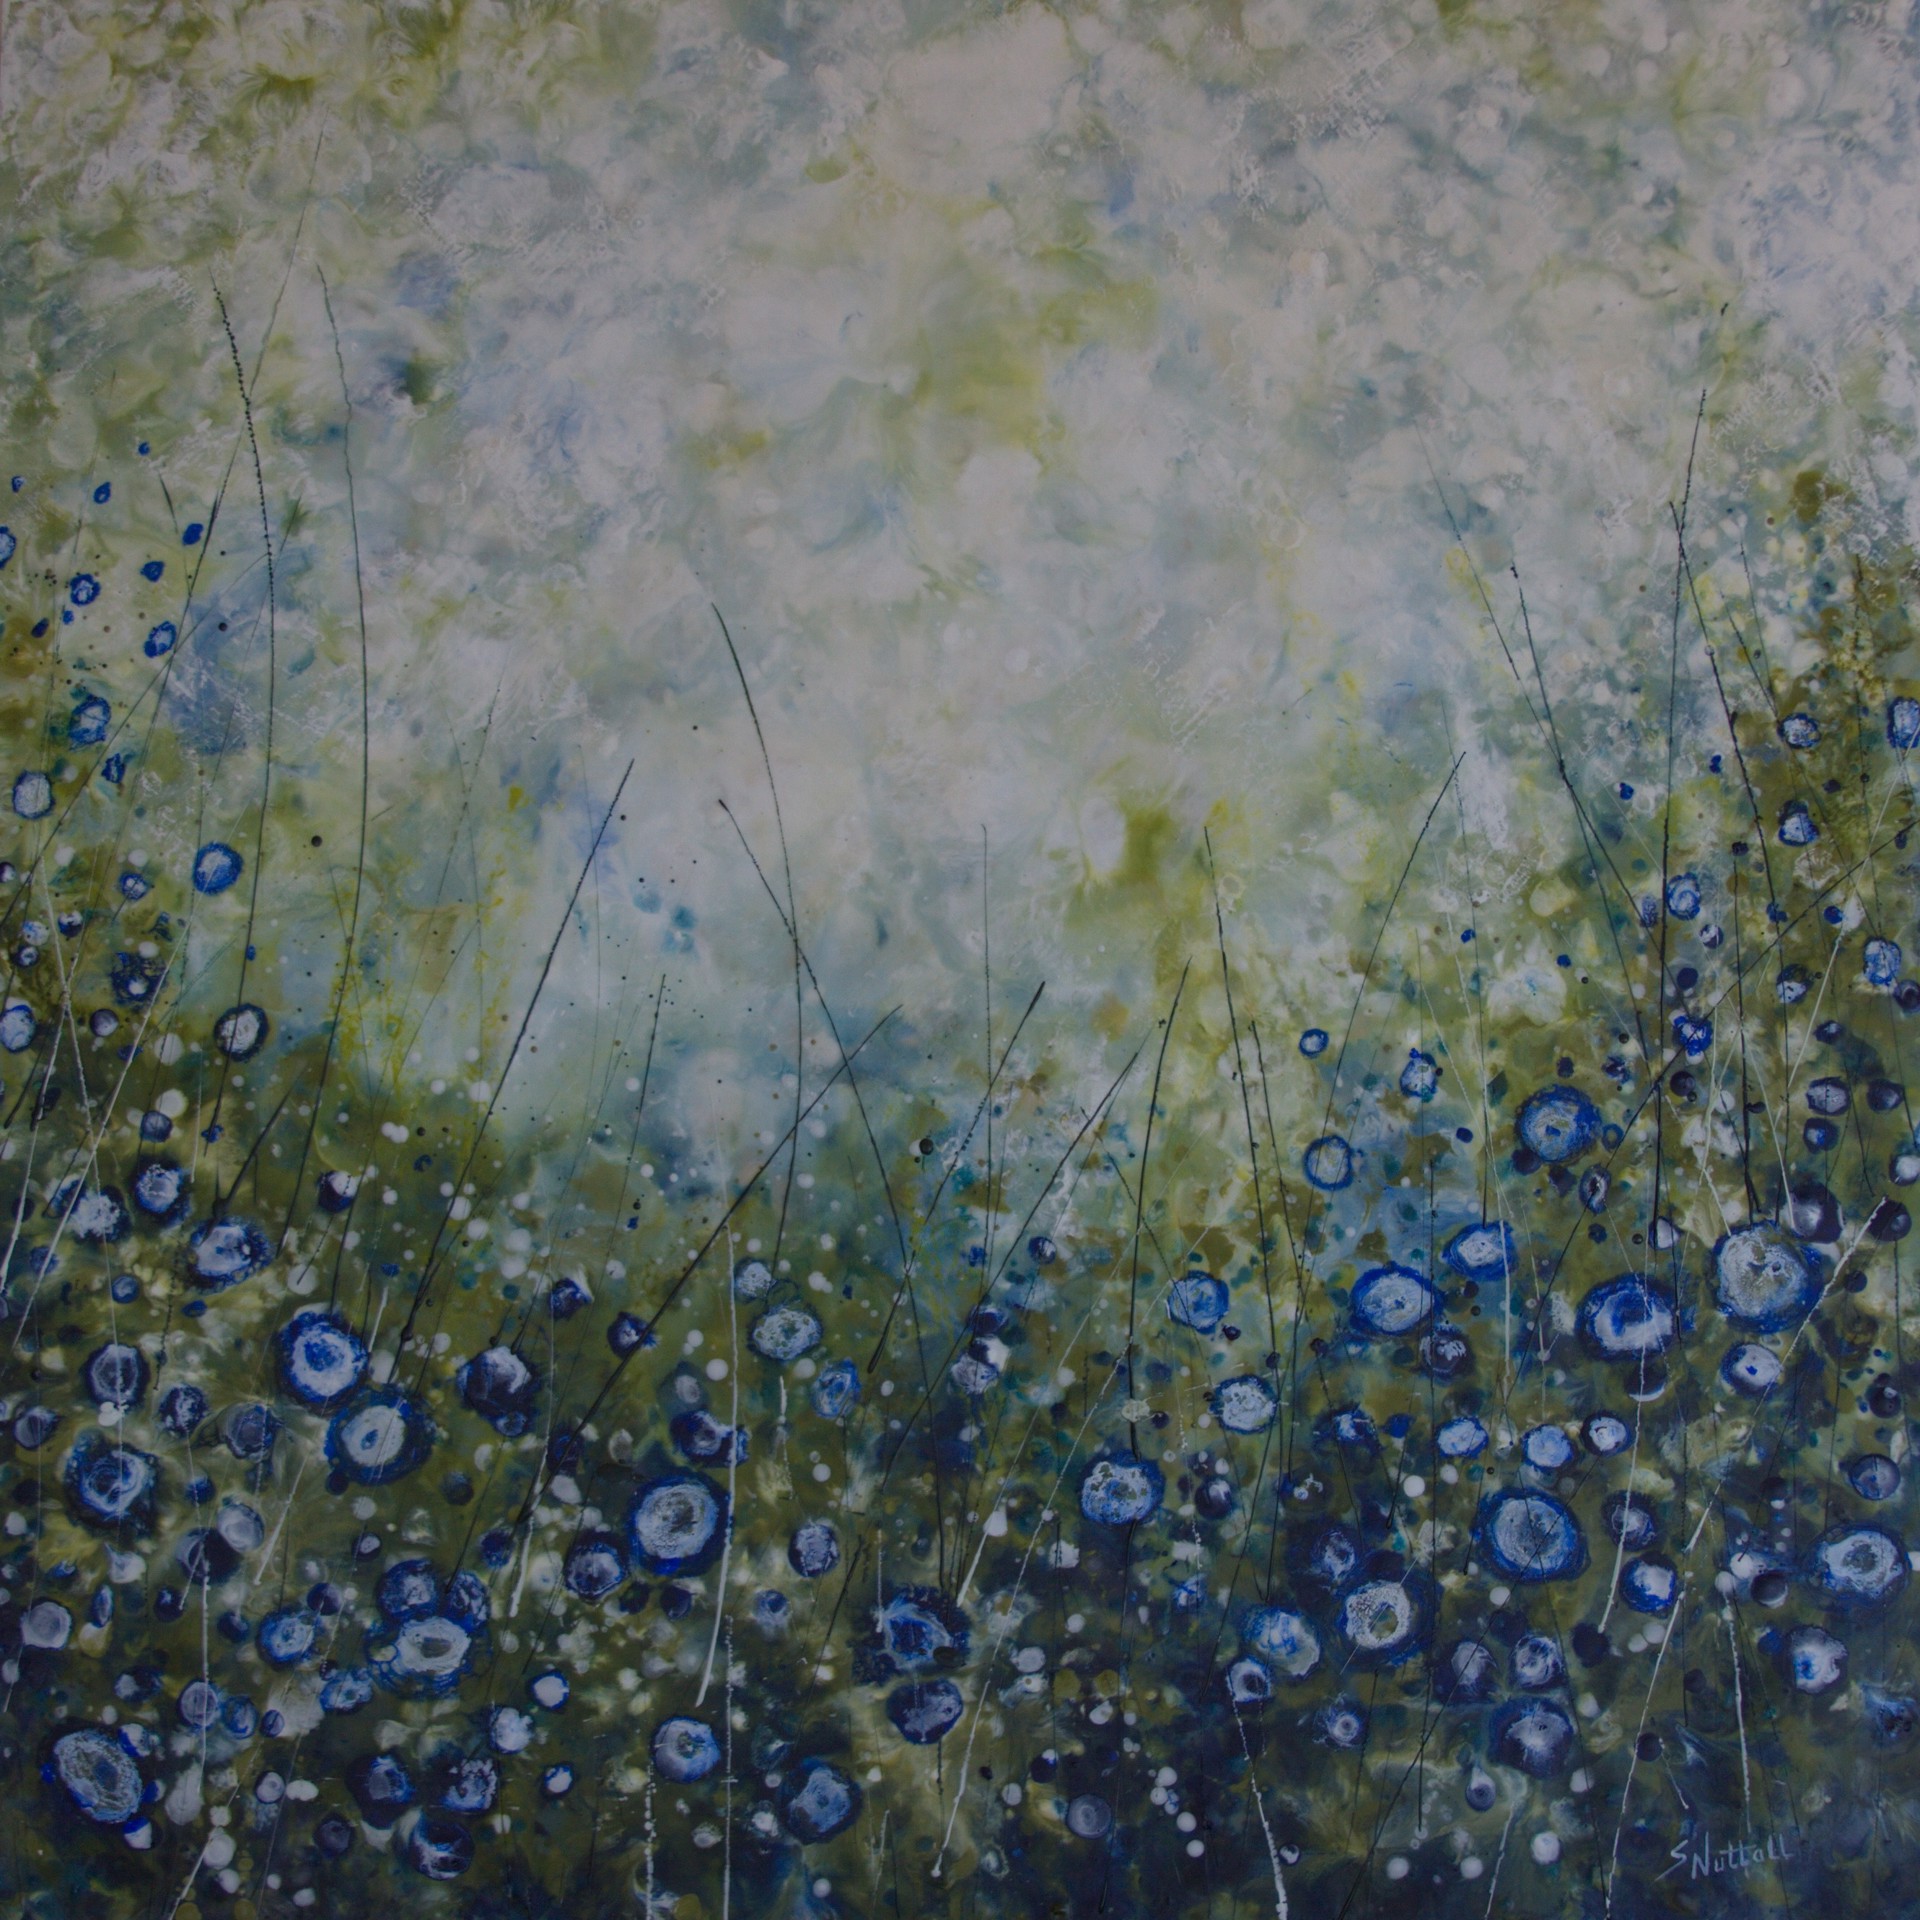 Field of Blue Flowers by Susan Nuttall